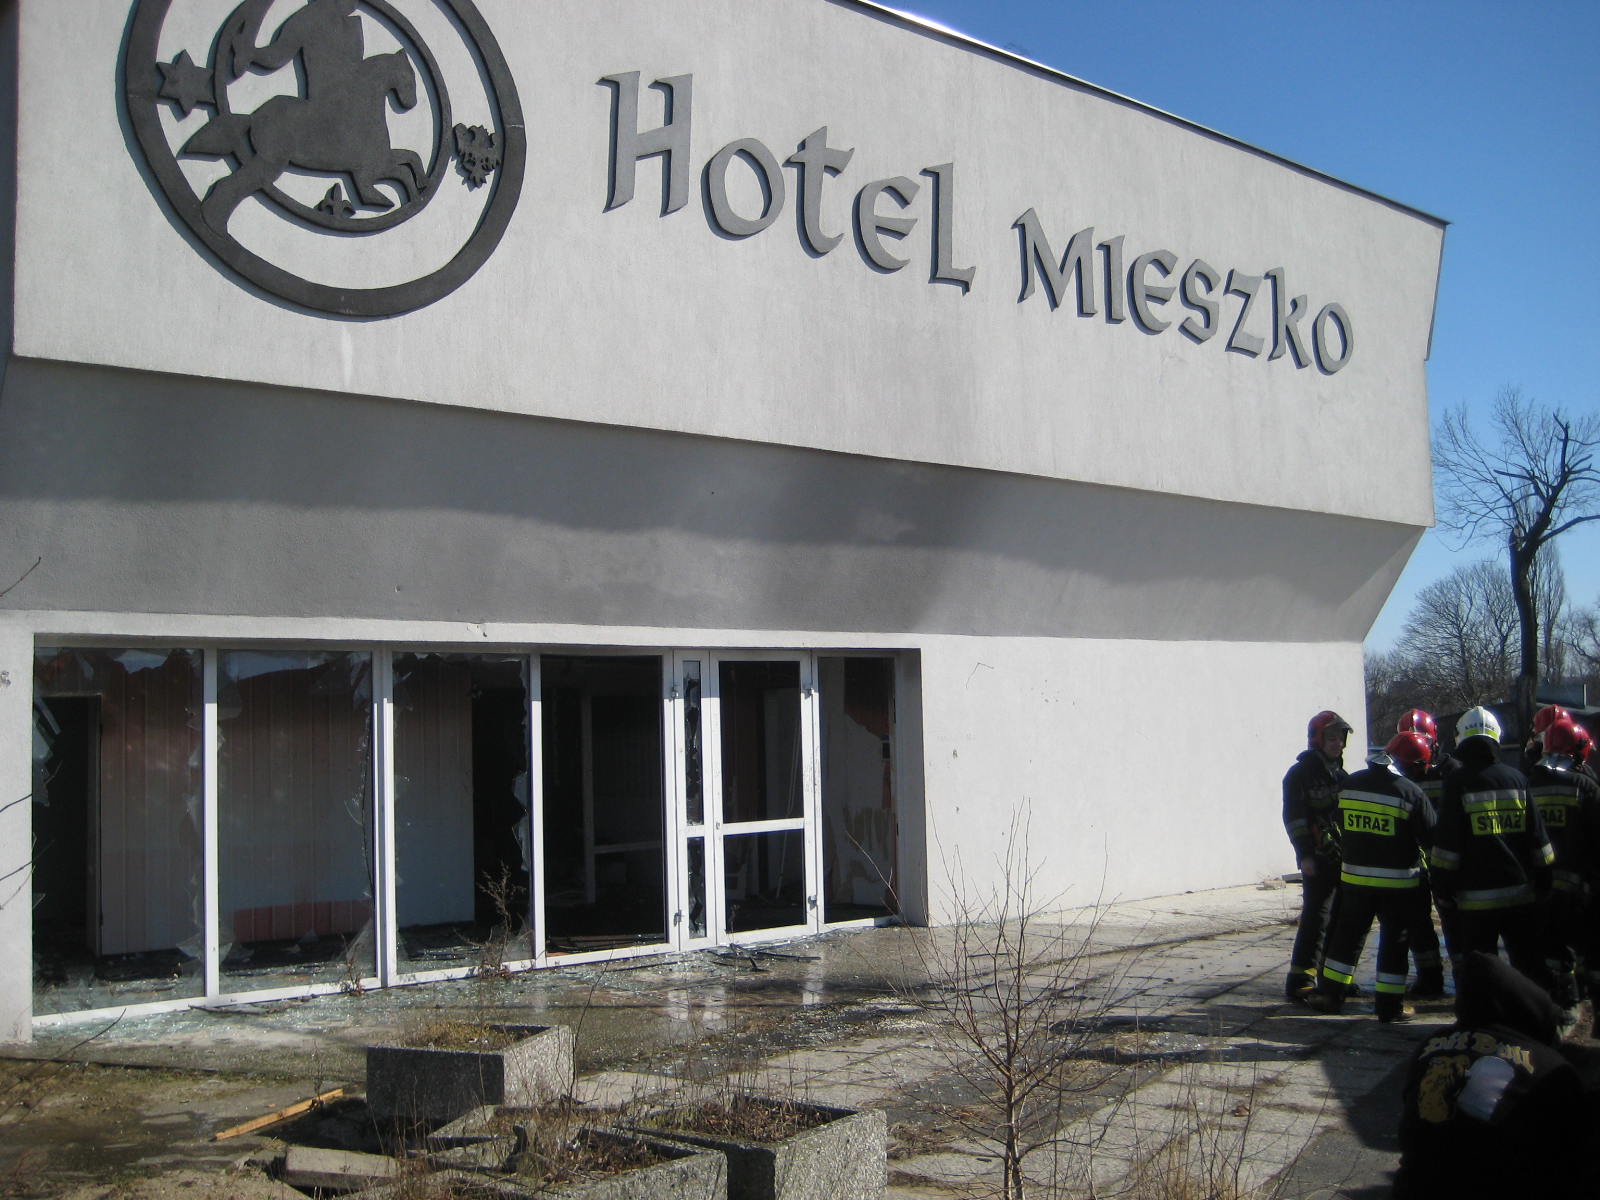 pożar hotel mieszko Gniezno - Rafał Muniak